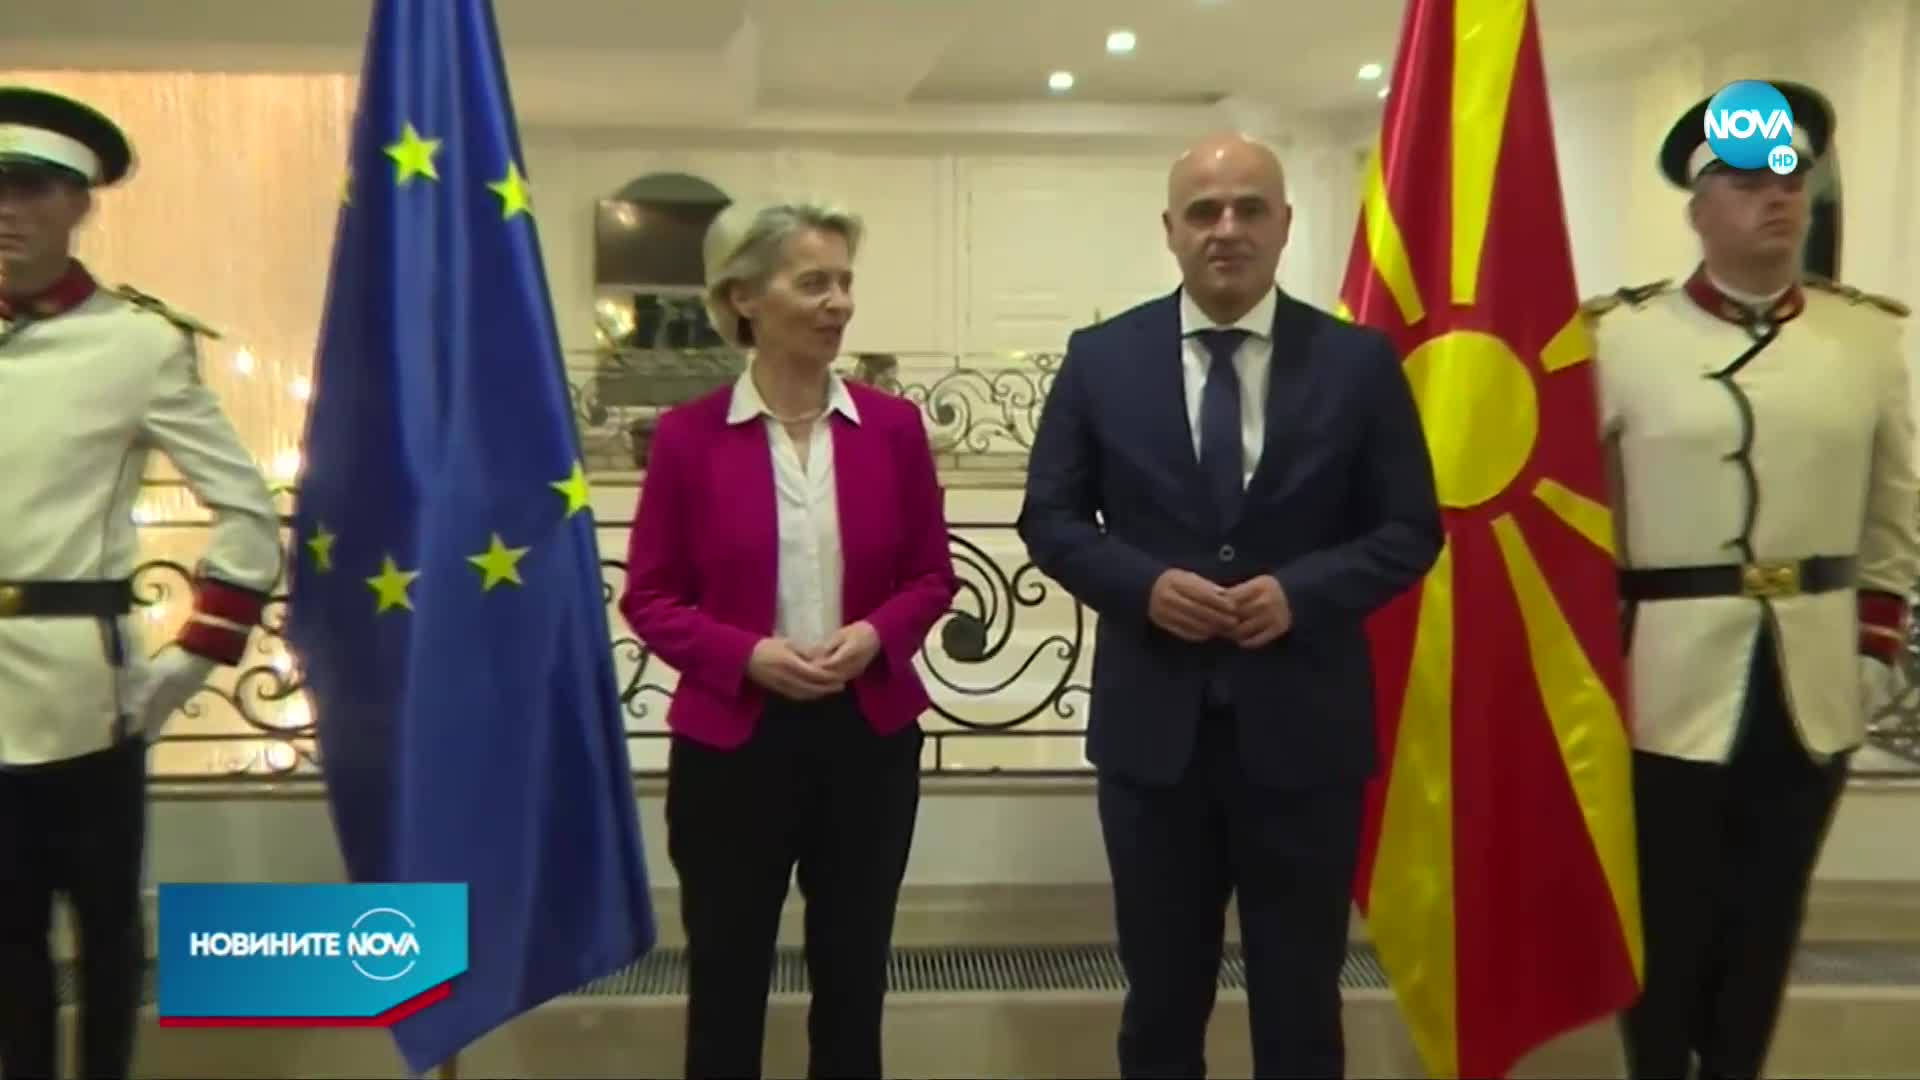 РС Македония и Албания официално започват преговори за членство в ЕС